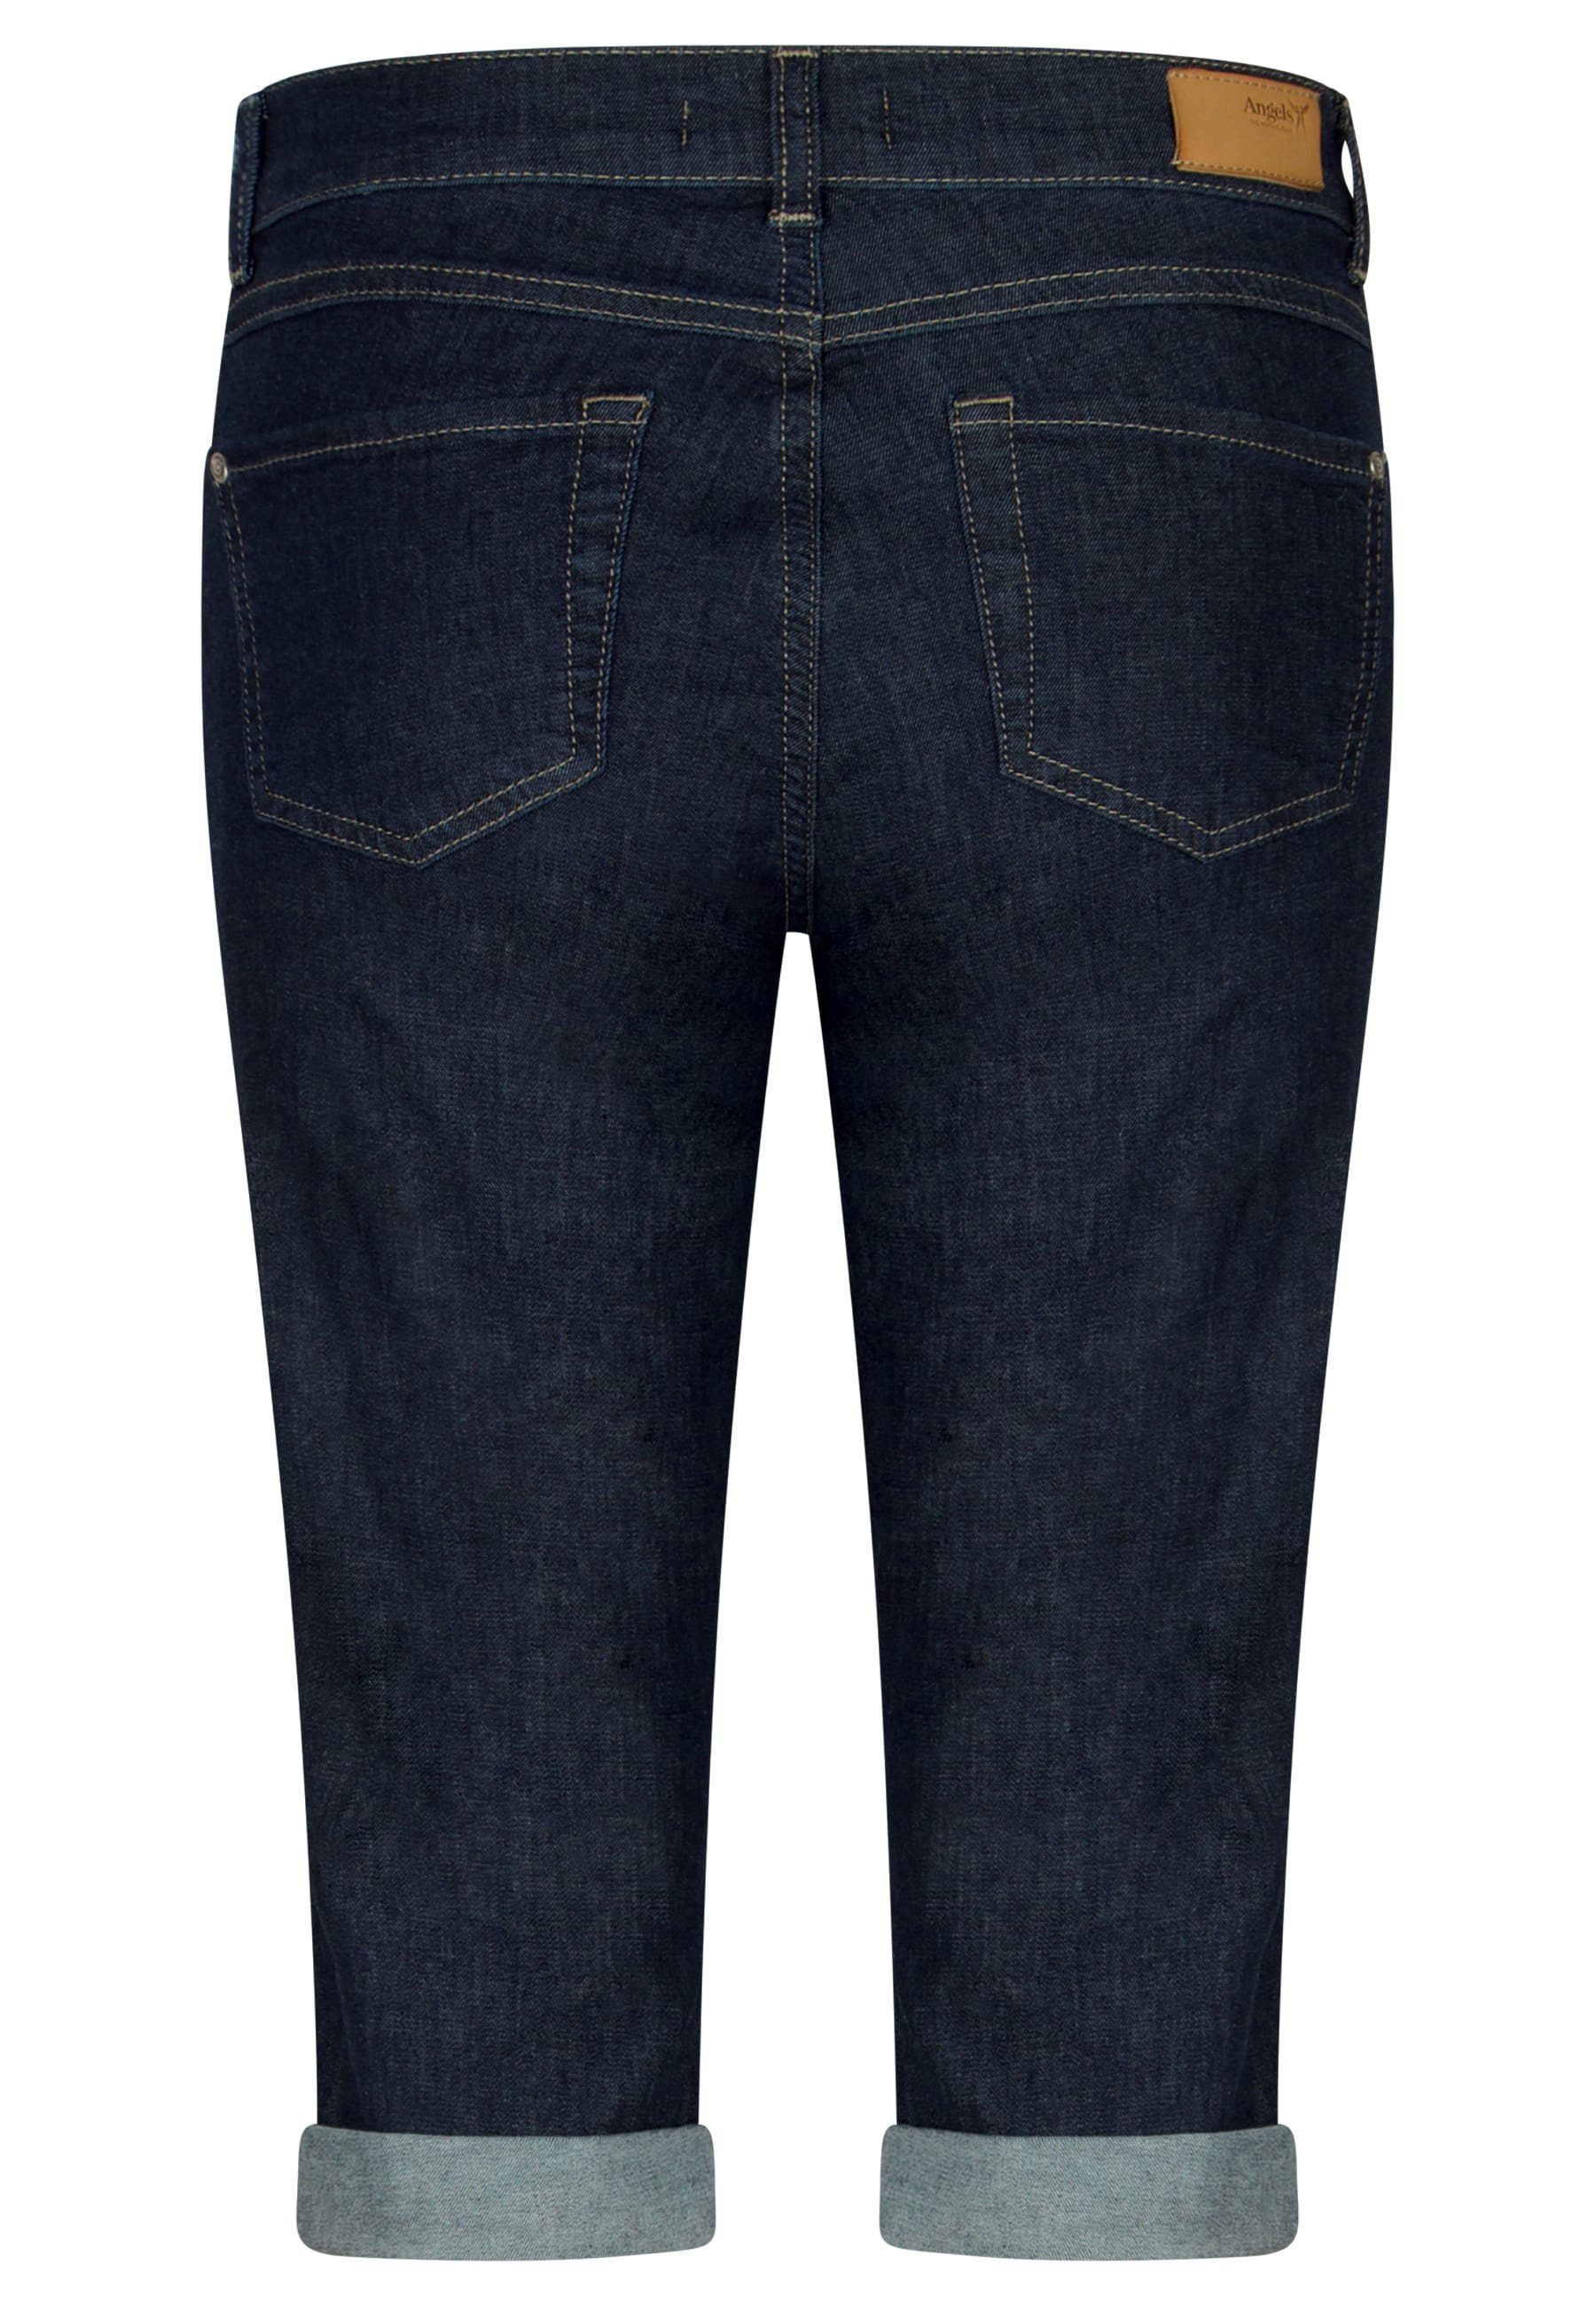 mit 5-Pocket-Jeans ANGELS mit TU Used-Look Jeans Capri blau Label-Applikationen